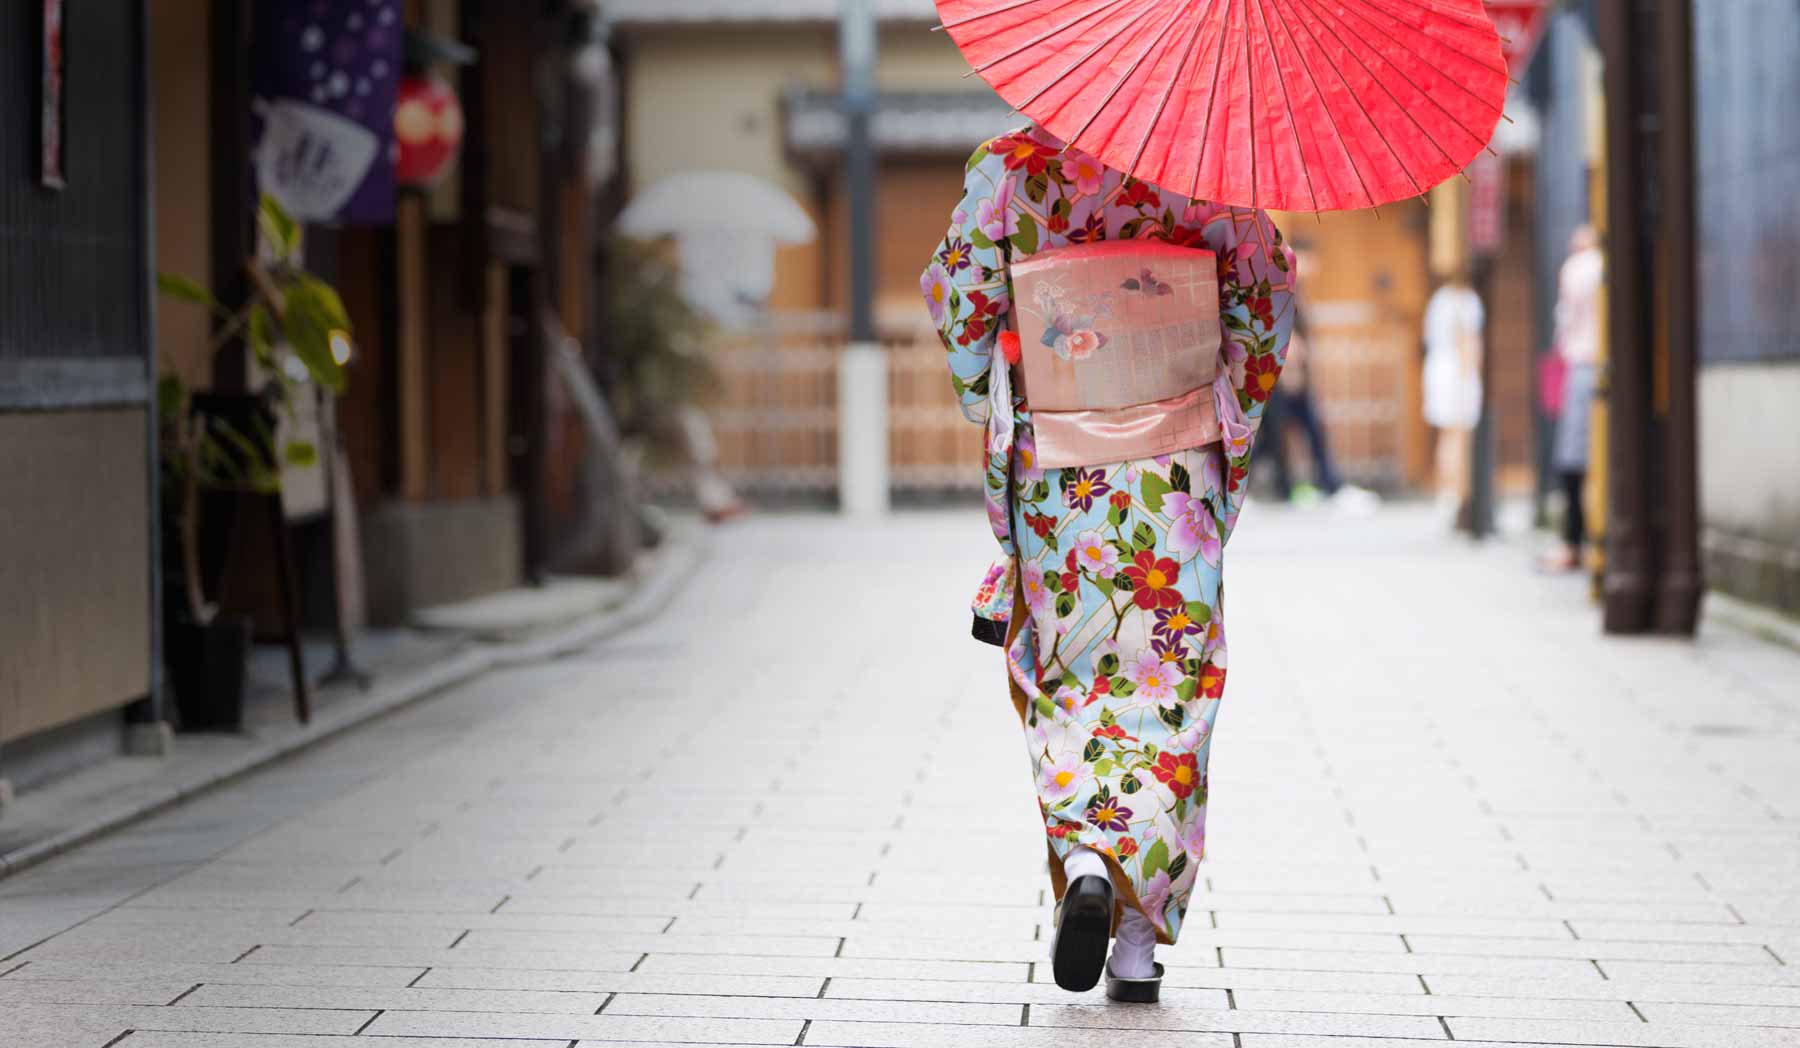 Umbrella Design Kimono - Japanese traditional pattern design Tote